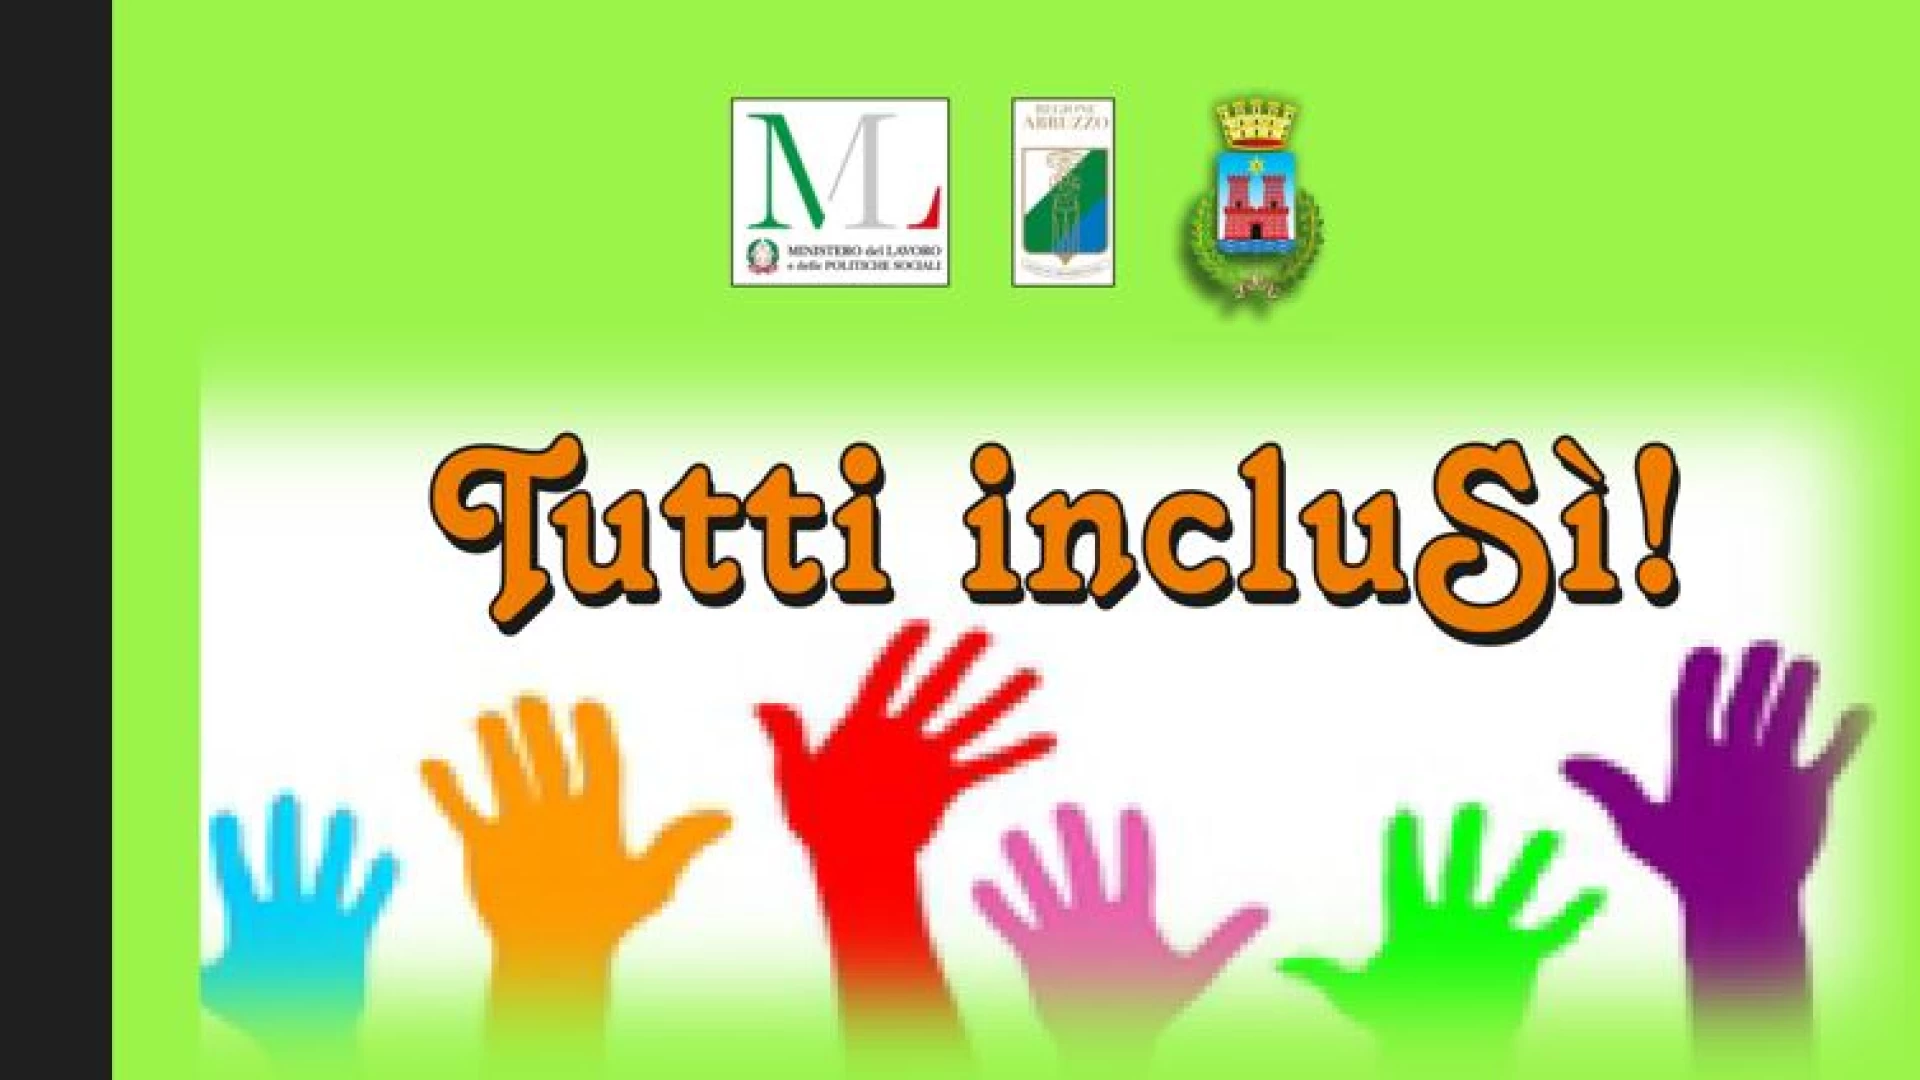 Castel Di Sangro: al via il progetto “Tutti Inclusi”. Sabato 6 aprile la presentazione dell’iniziativa presso la sala Polifunzionale comunale.